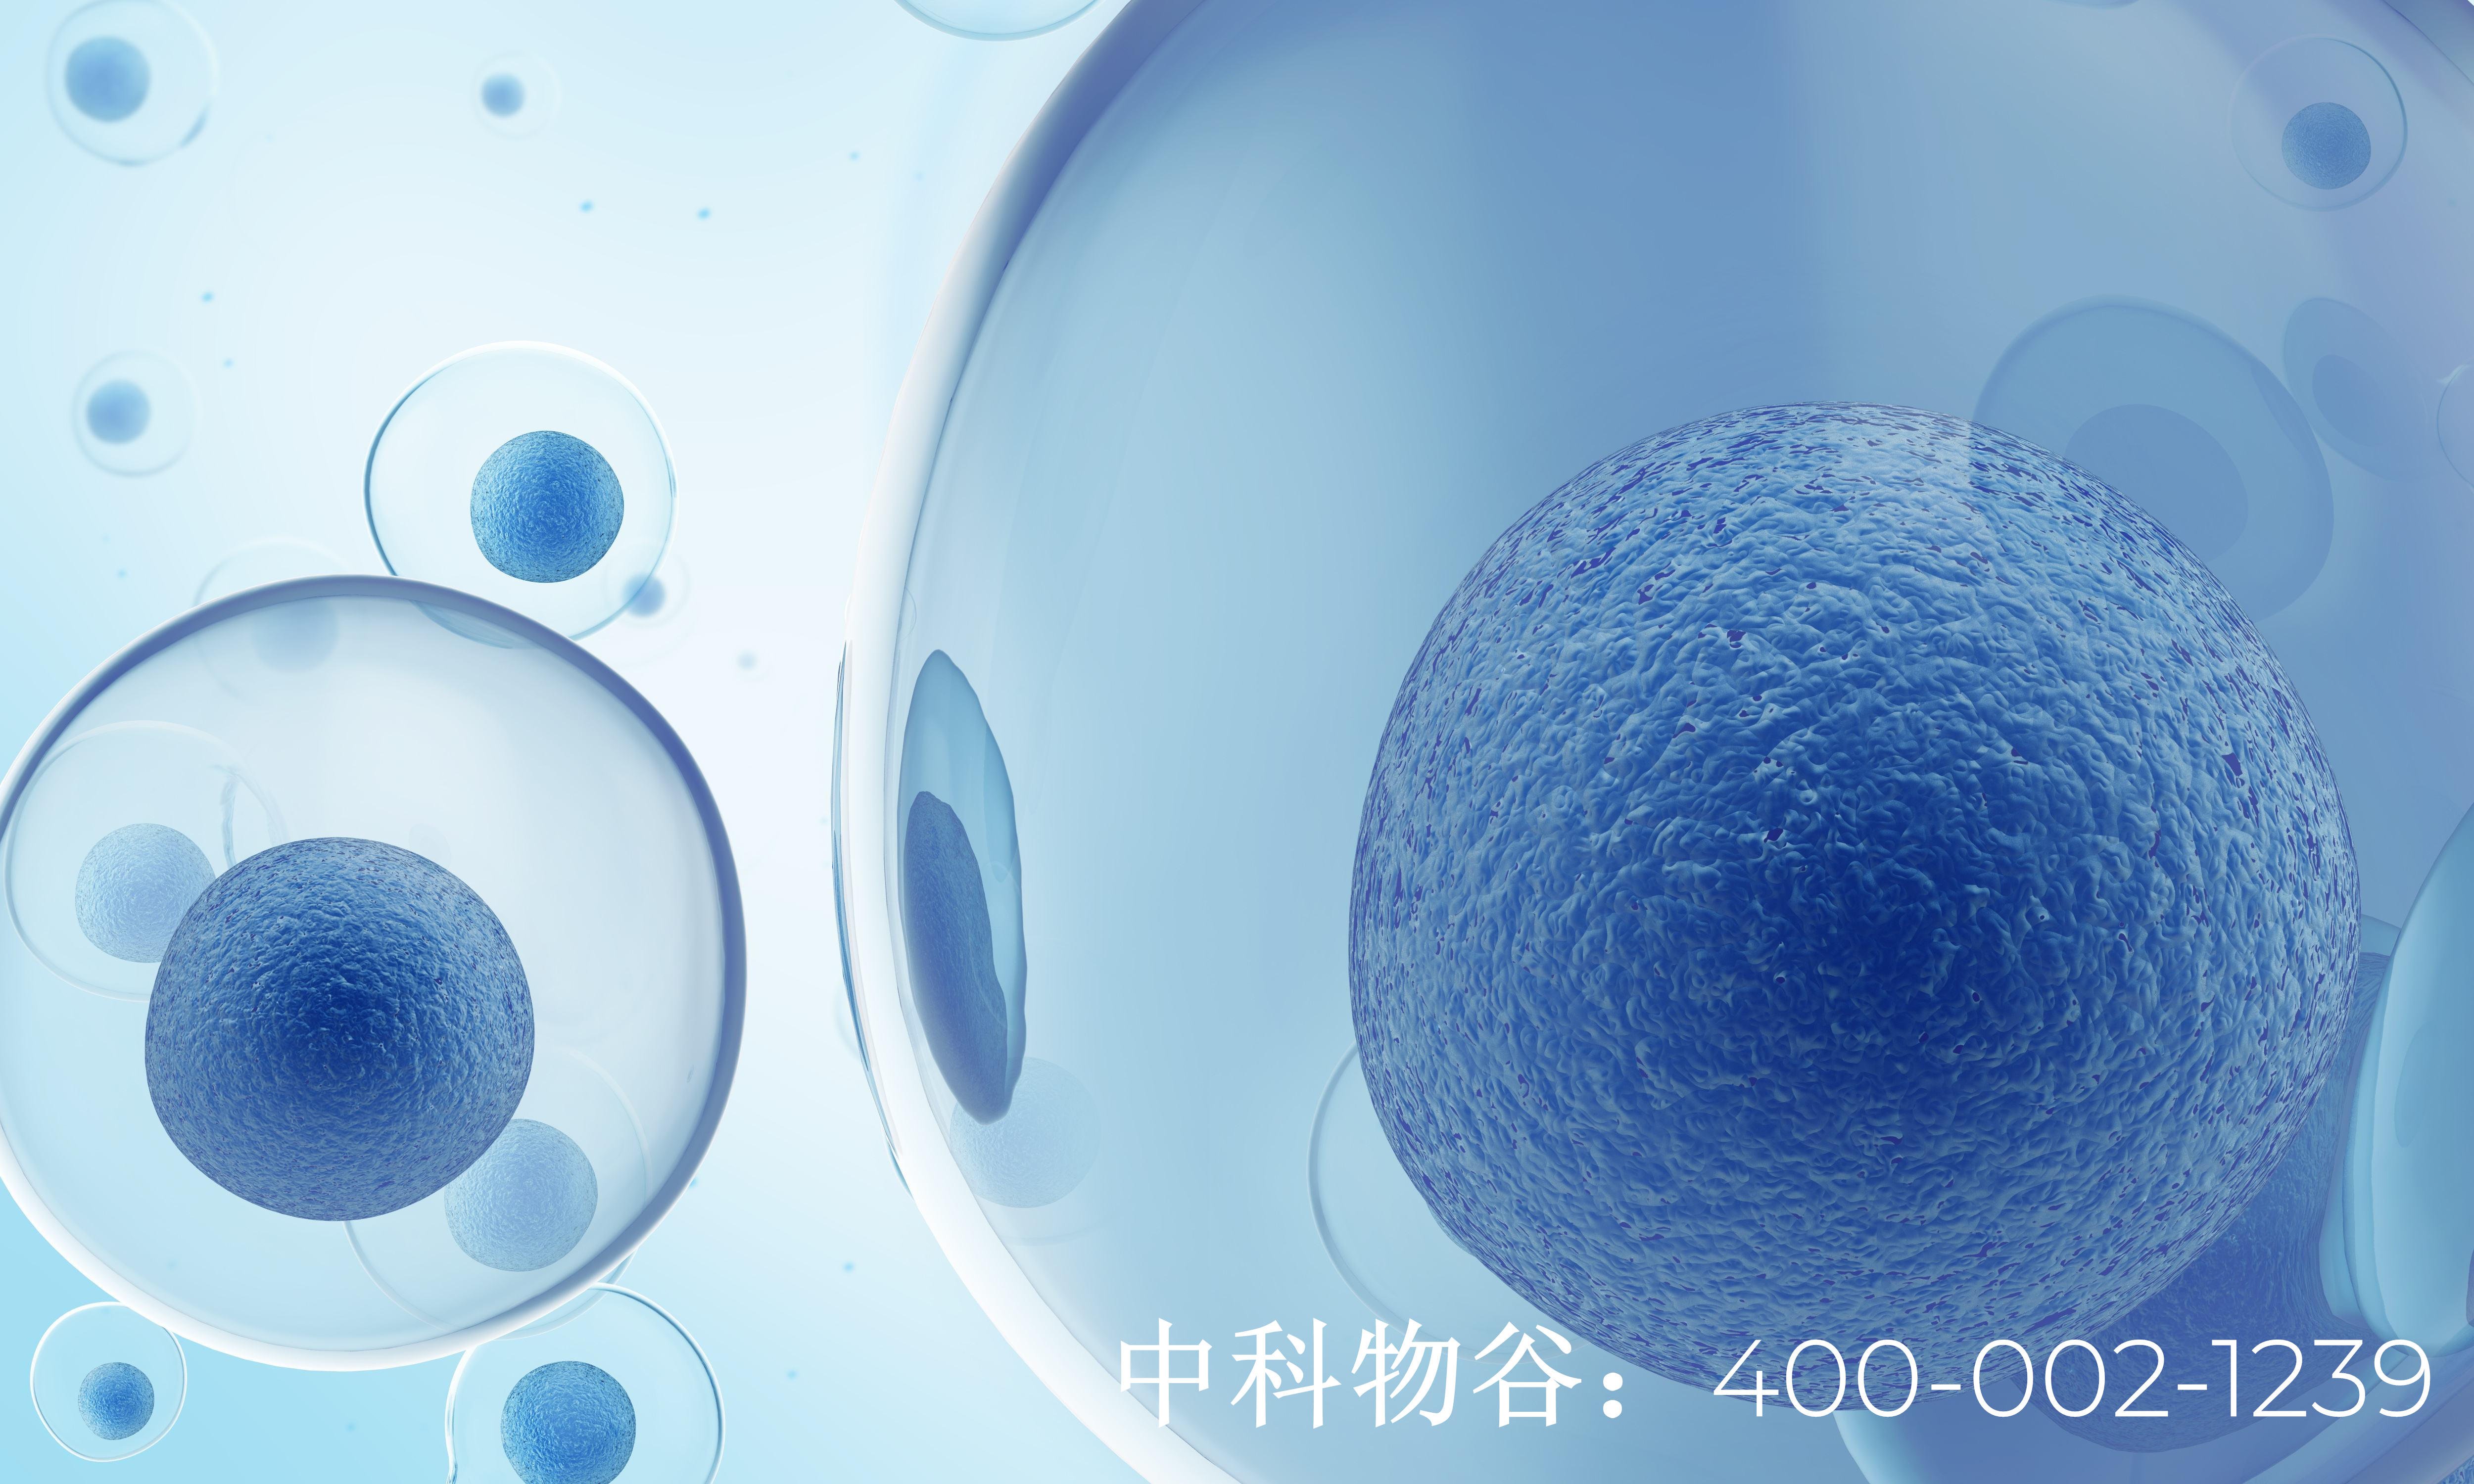 北京中科物谷NK免疫细胞治疗乳腺癌